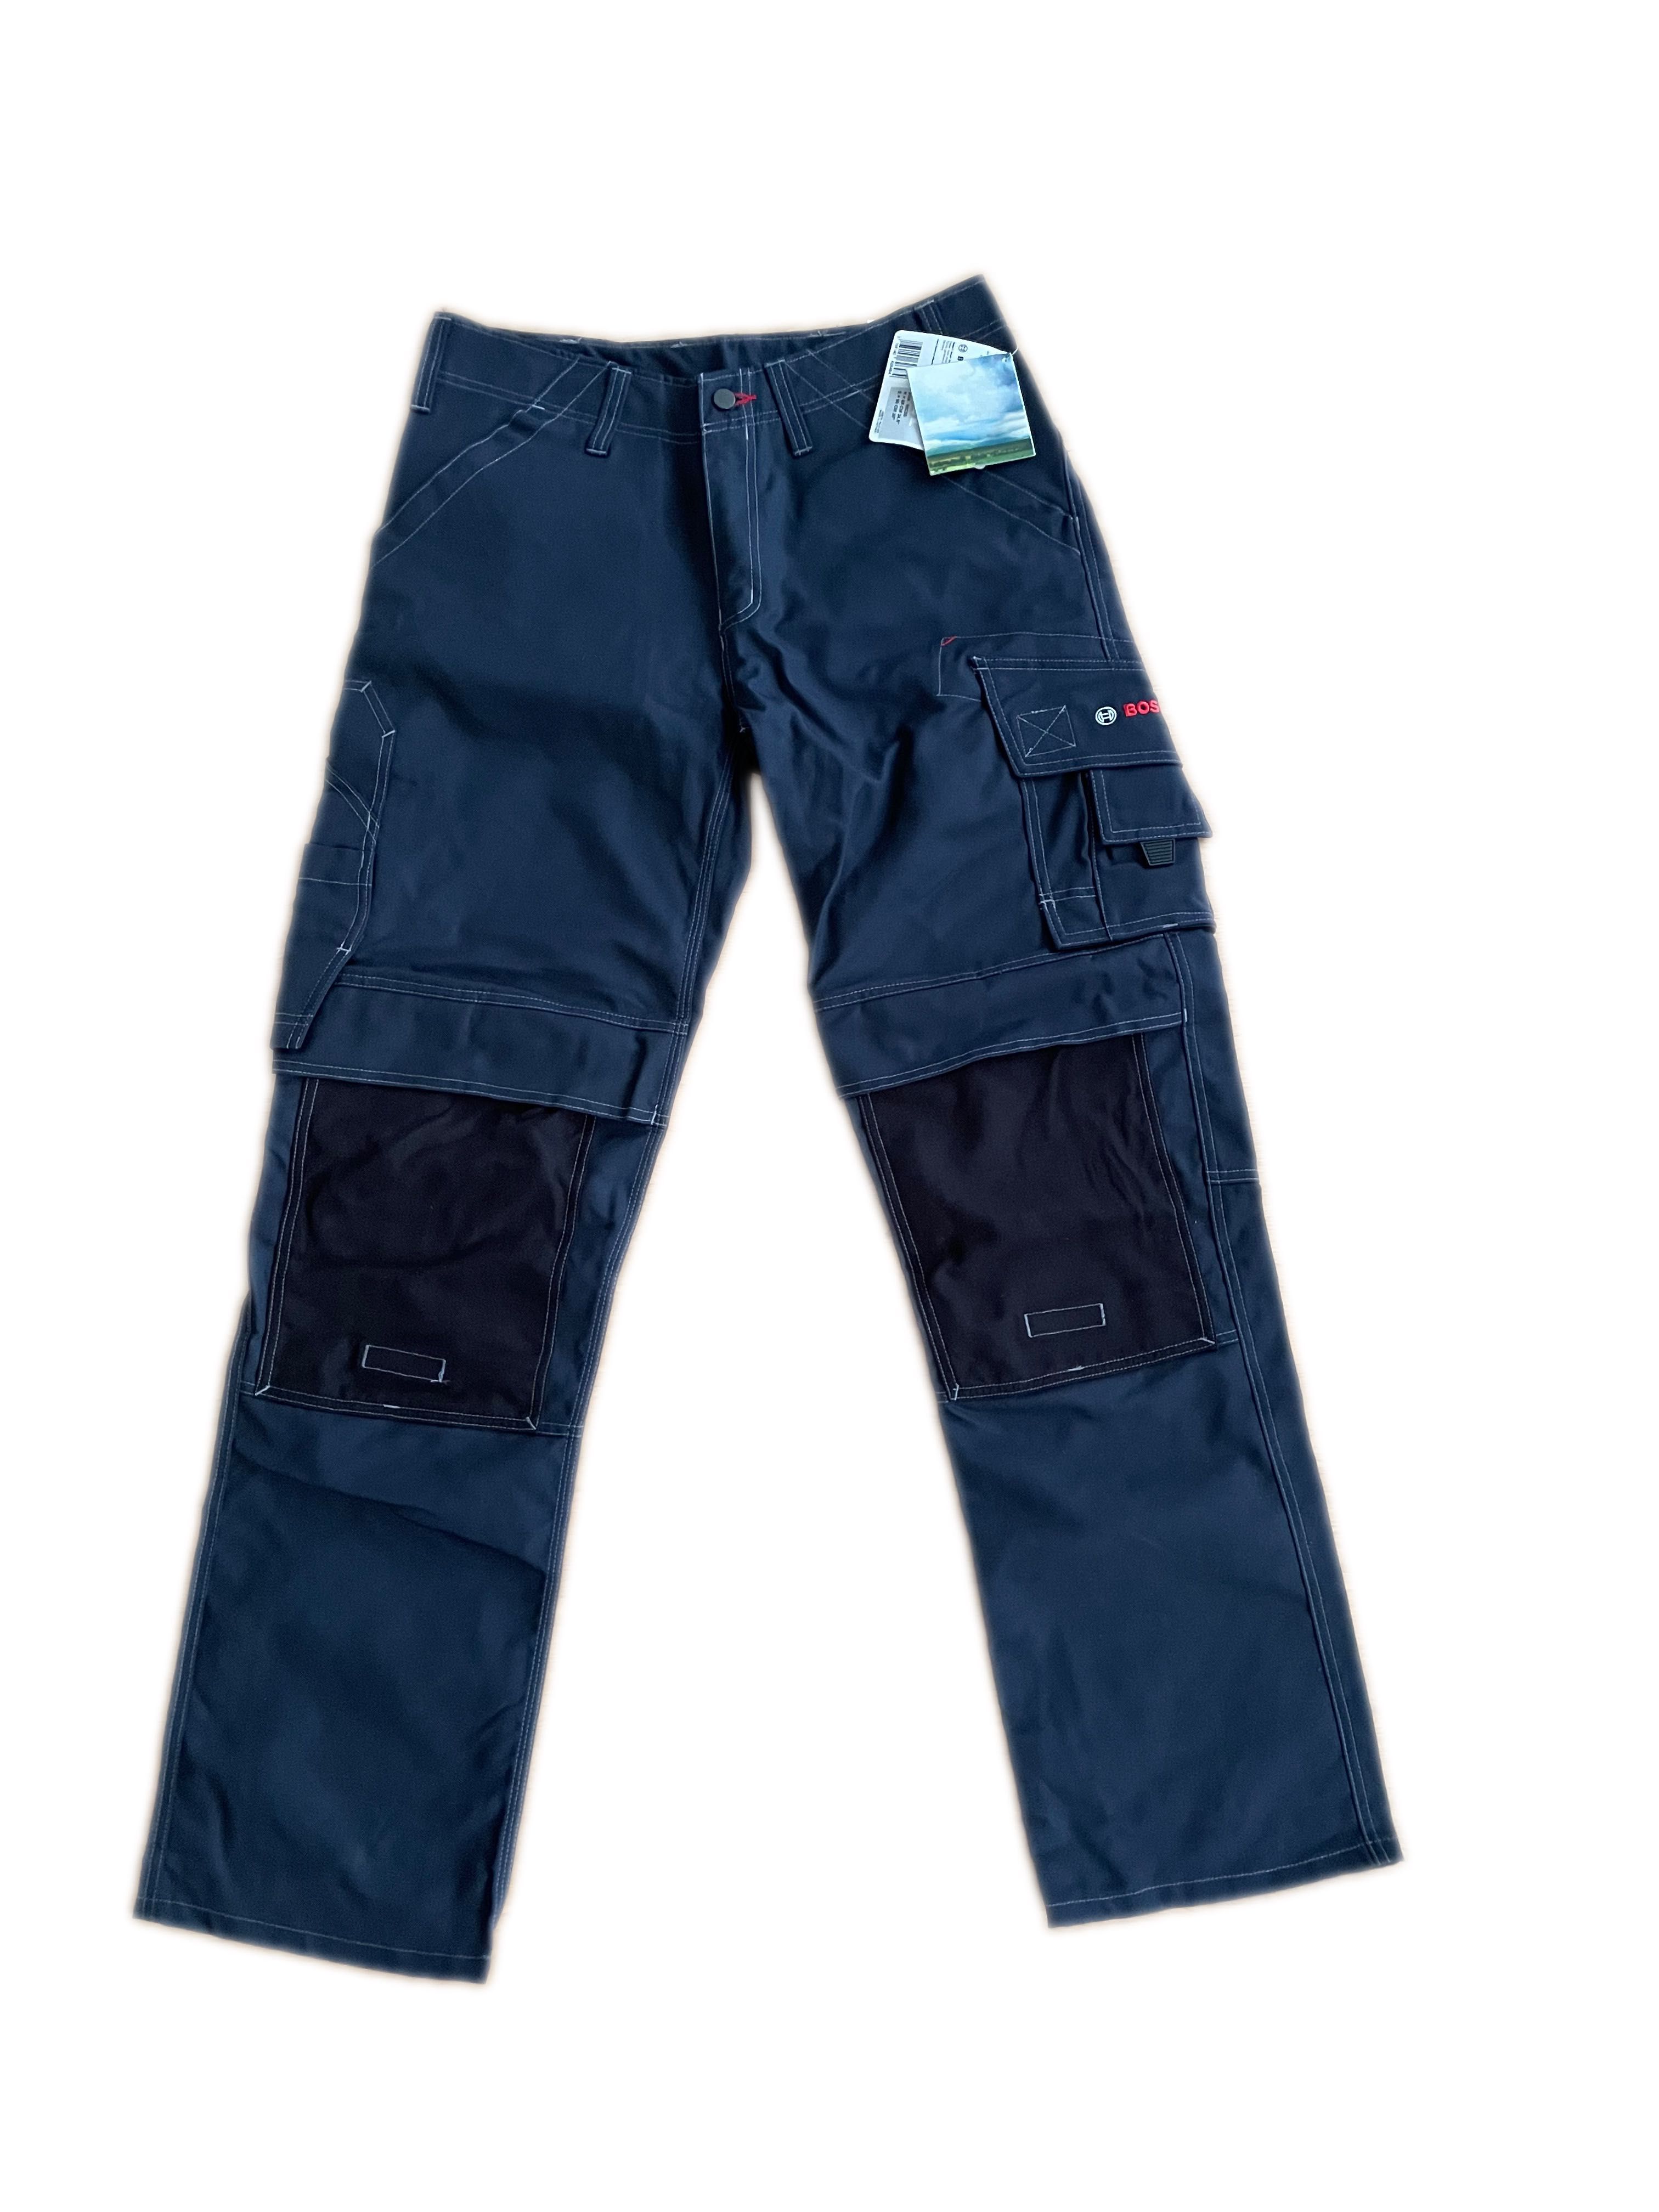 Spodnie z kieszeniami na wkładki nakolannikowe maskot/bosch Size 90C50